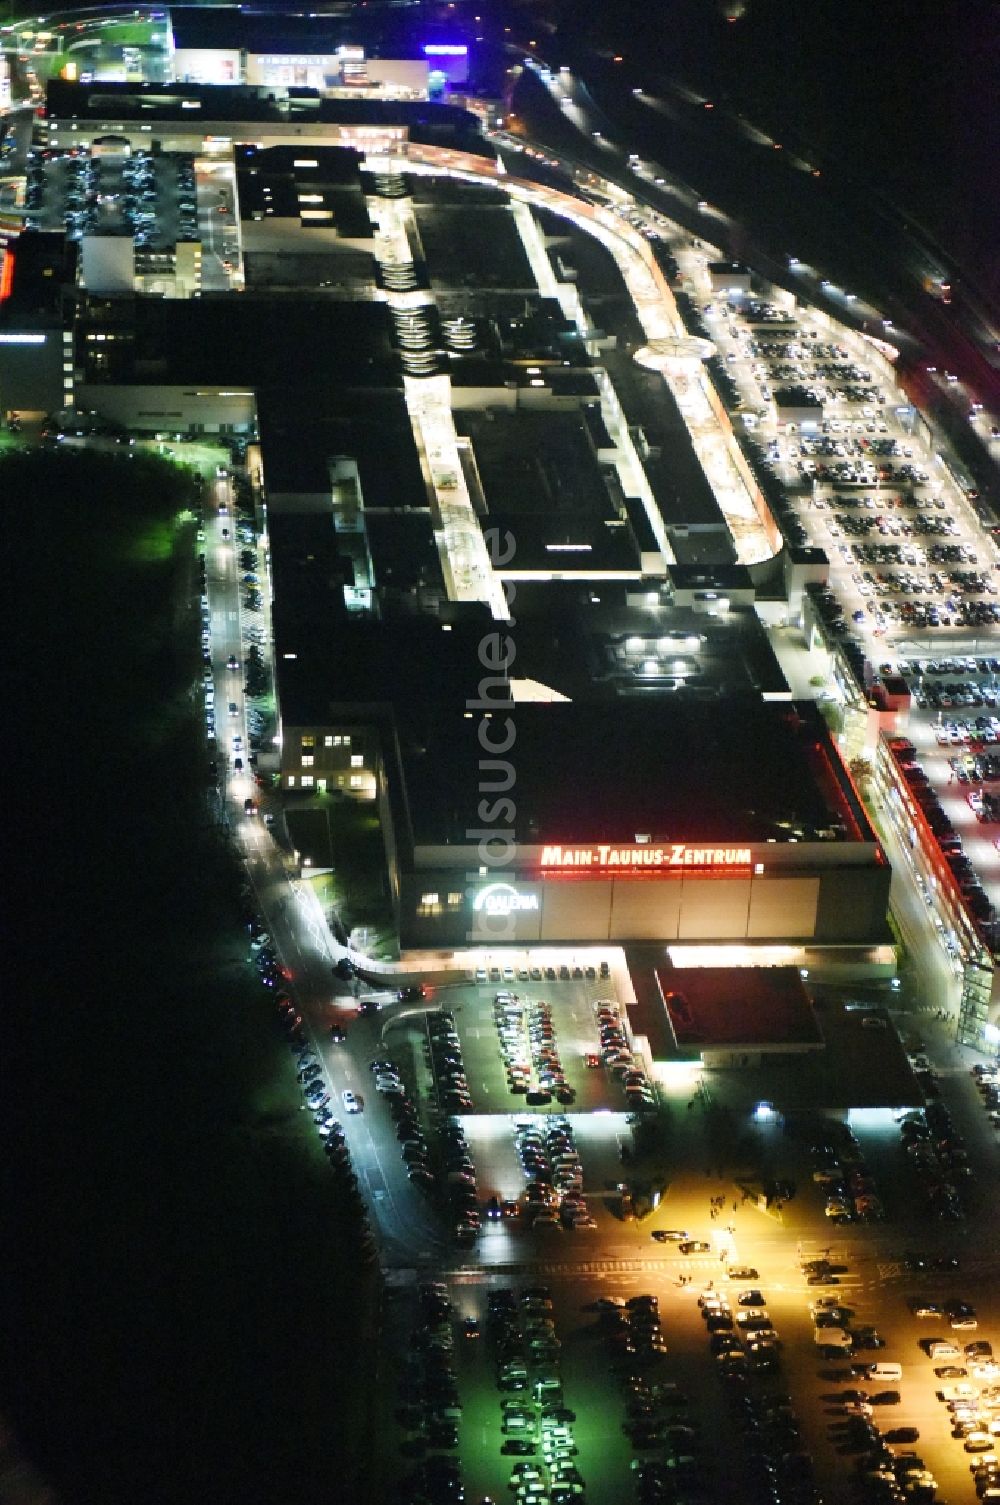 Nachtluftbild Sulzbach (Taunus) - Nachtluftbild Einkaufszentrum Main-Taunus-Zentrum in Sulzbach / Hessen